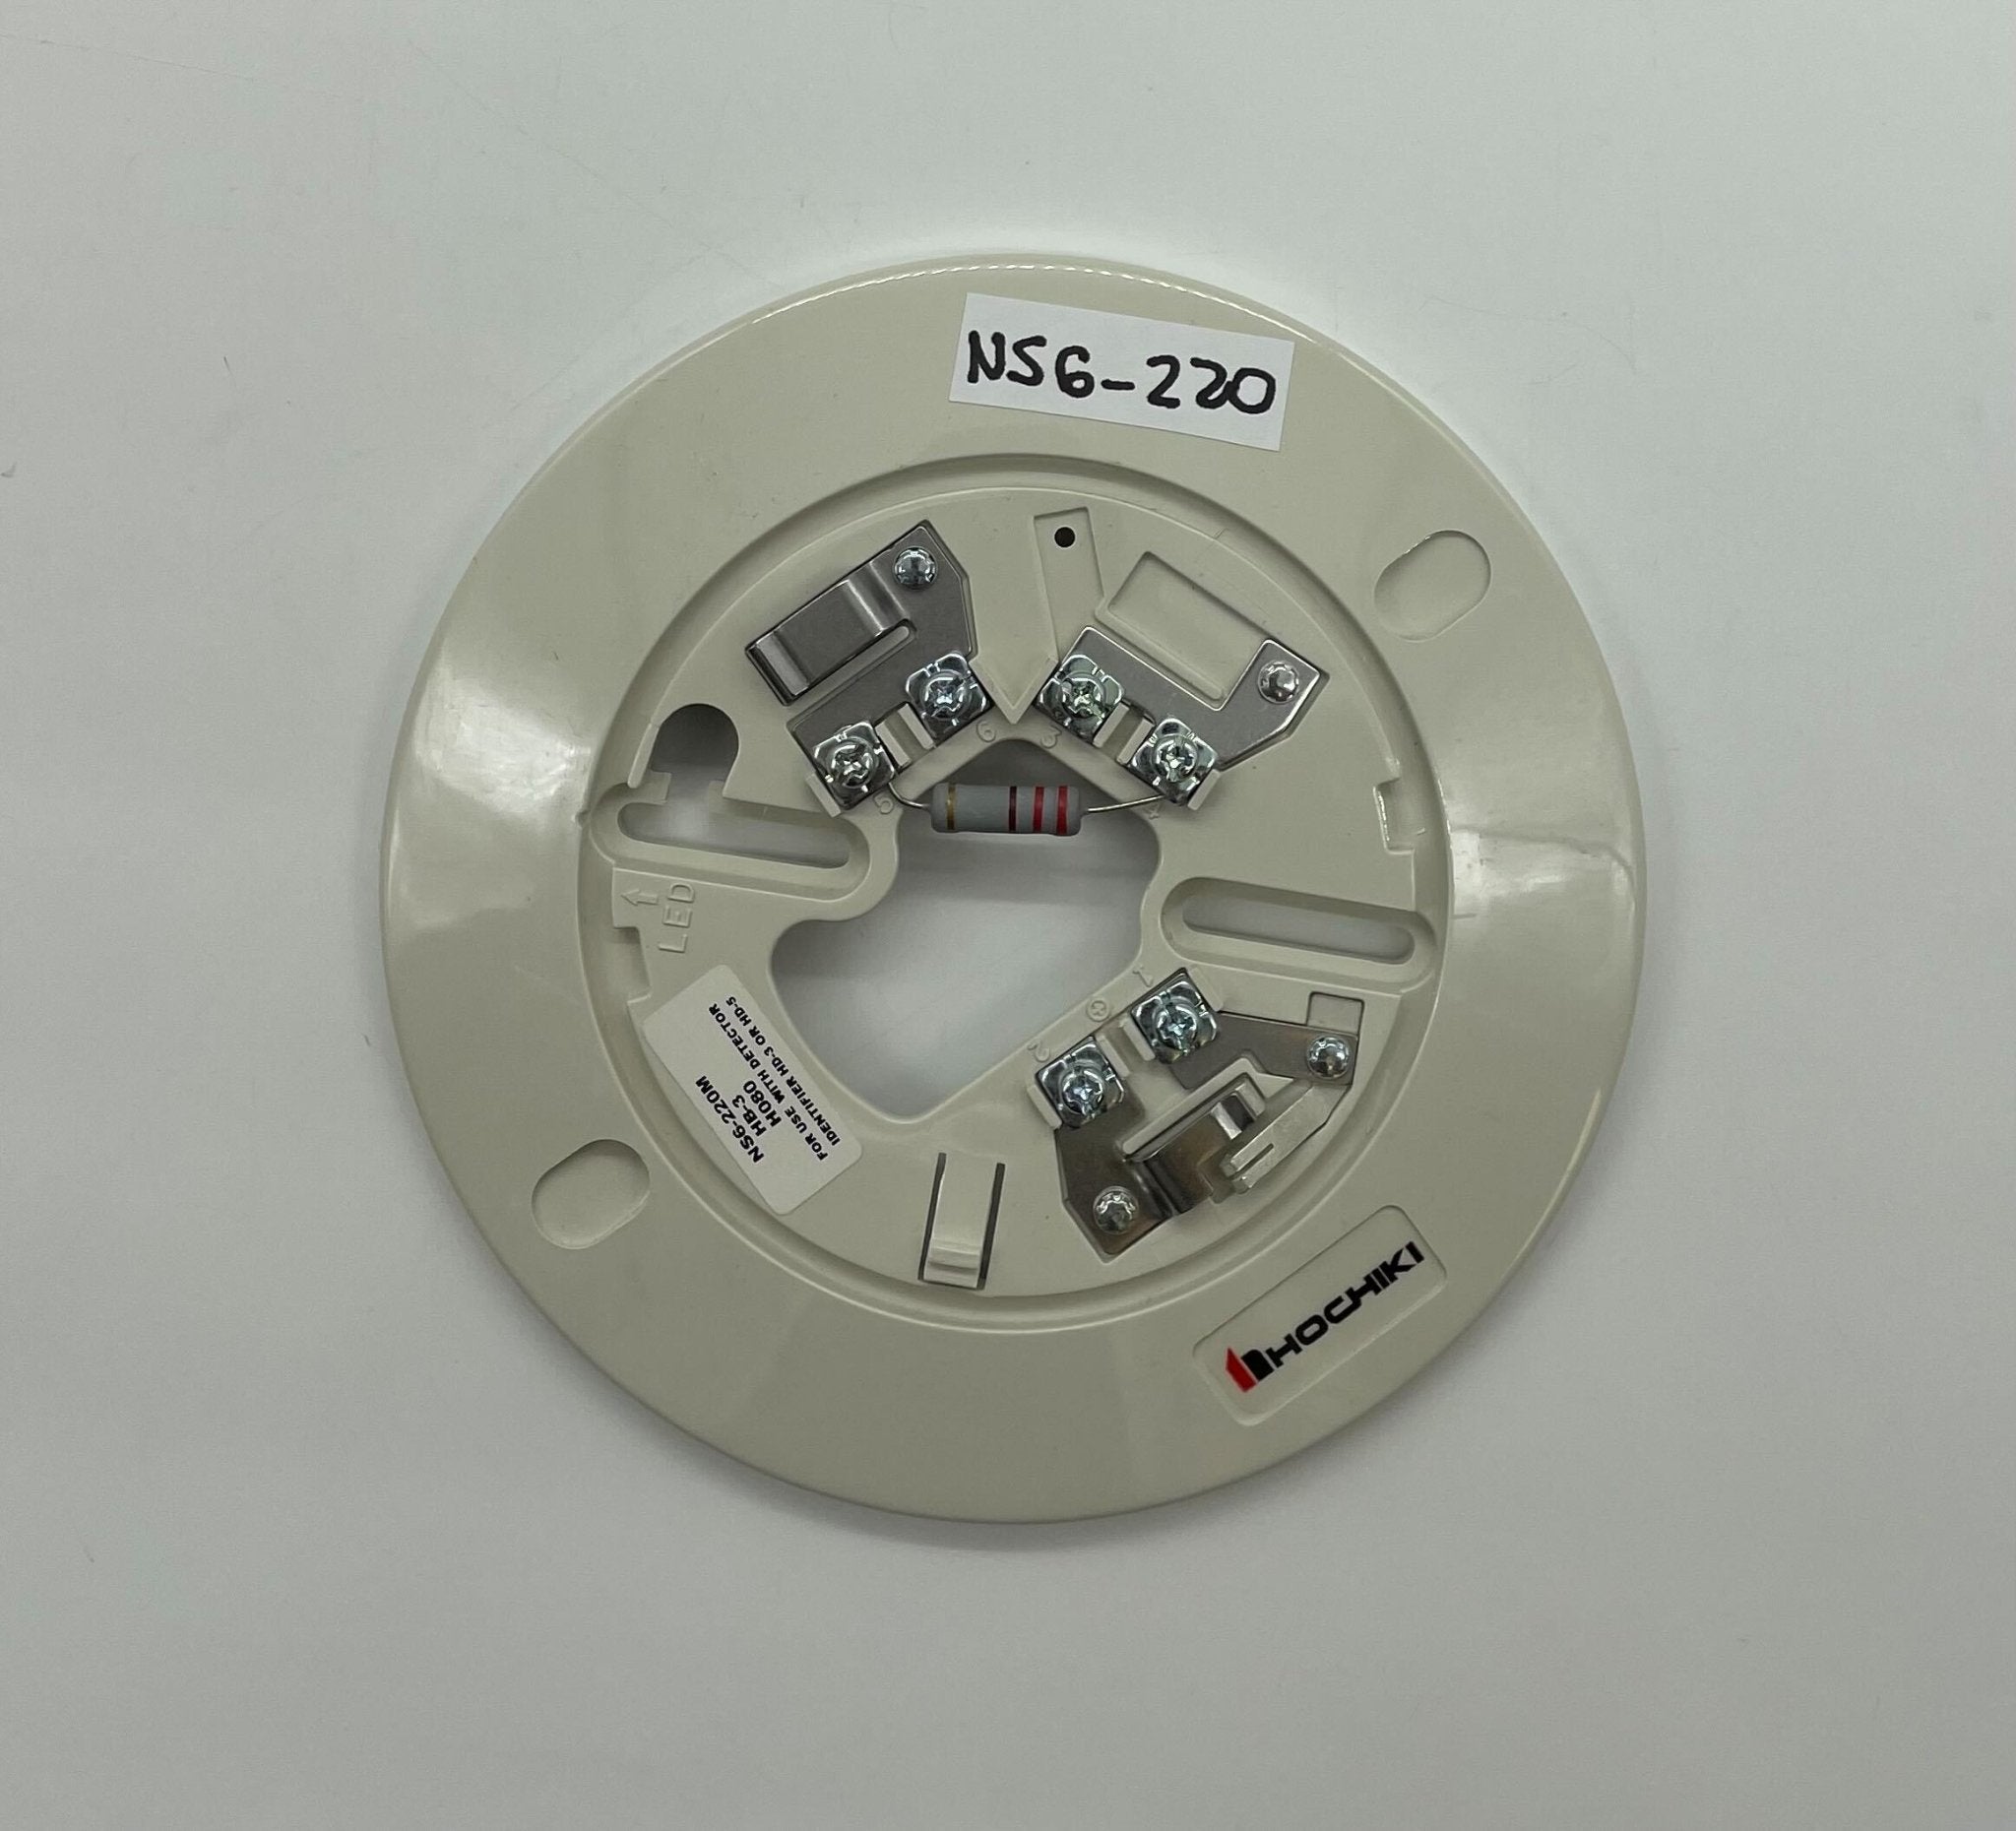 Hochiki NS6-220 - The Fire Alarm Supplier